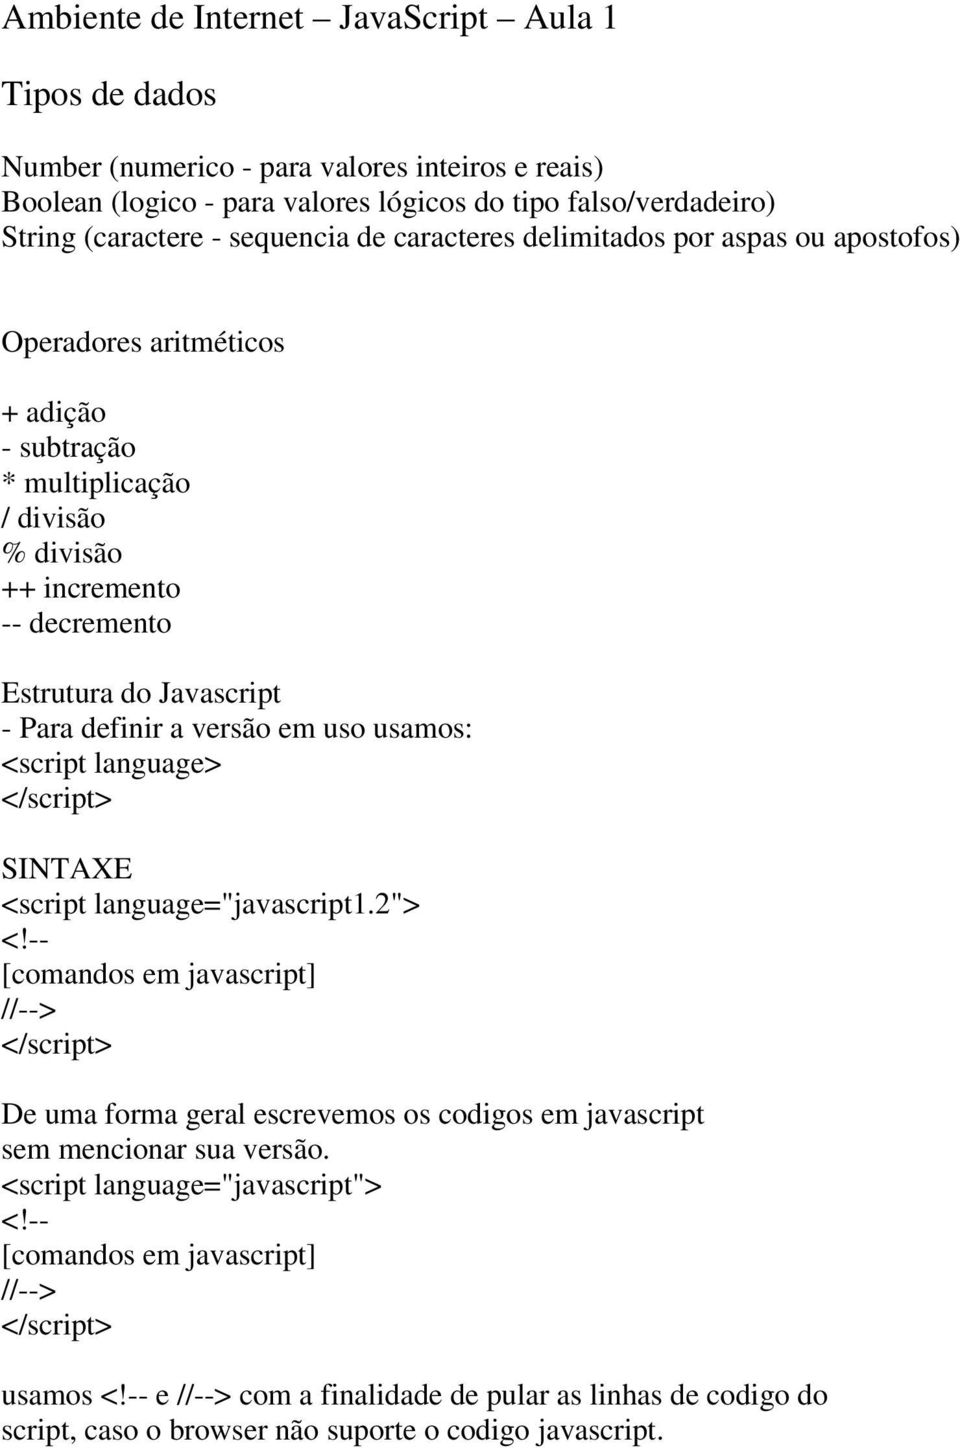 Javascript - Para definir a versão em uso usamos: <script language> SINTAXE <script language="javascript1.